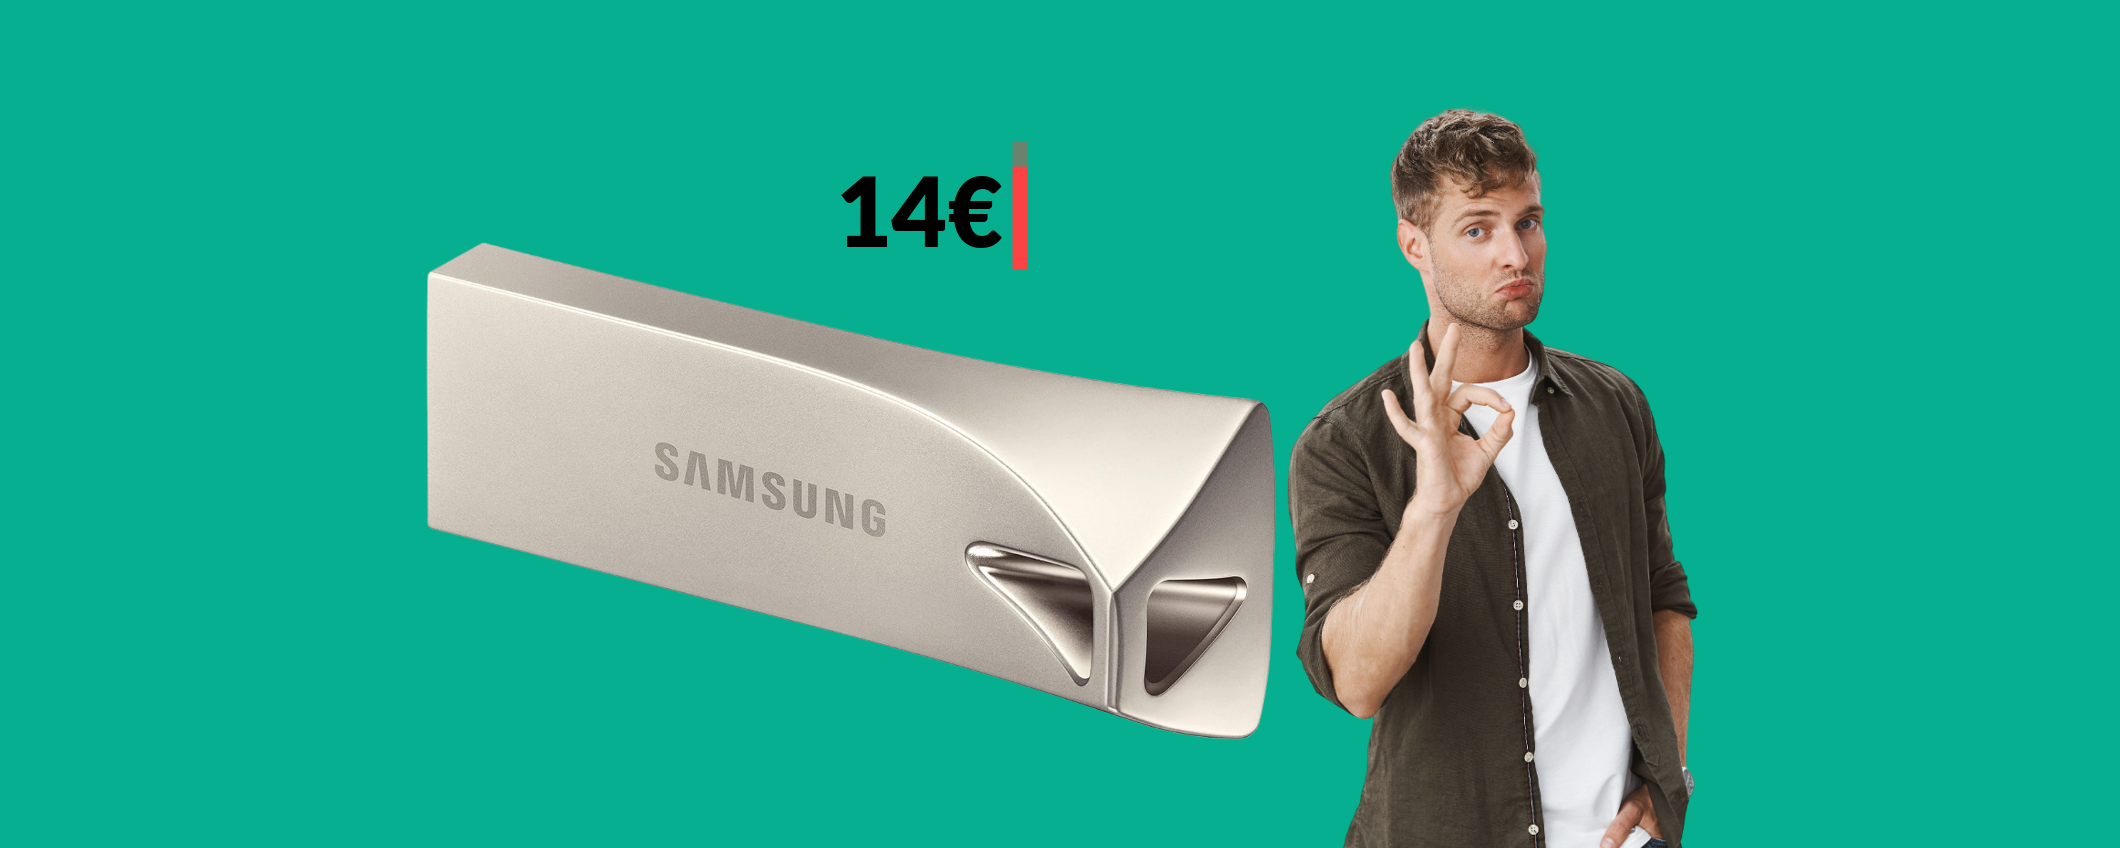 Chiavetta USB 32GB Samsung: elegante e veloce come un fulmine